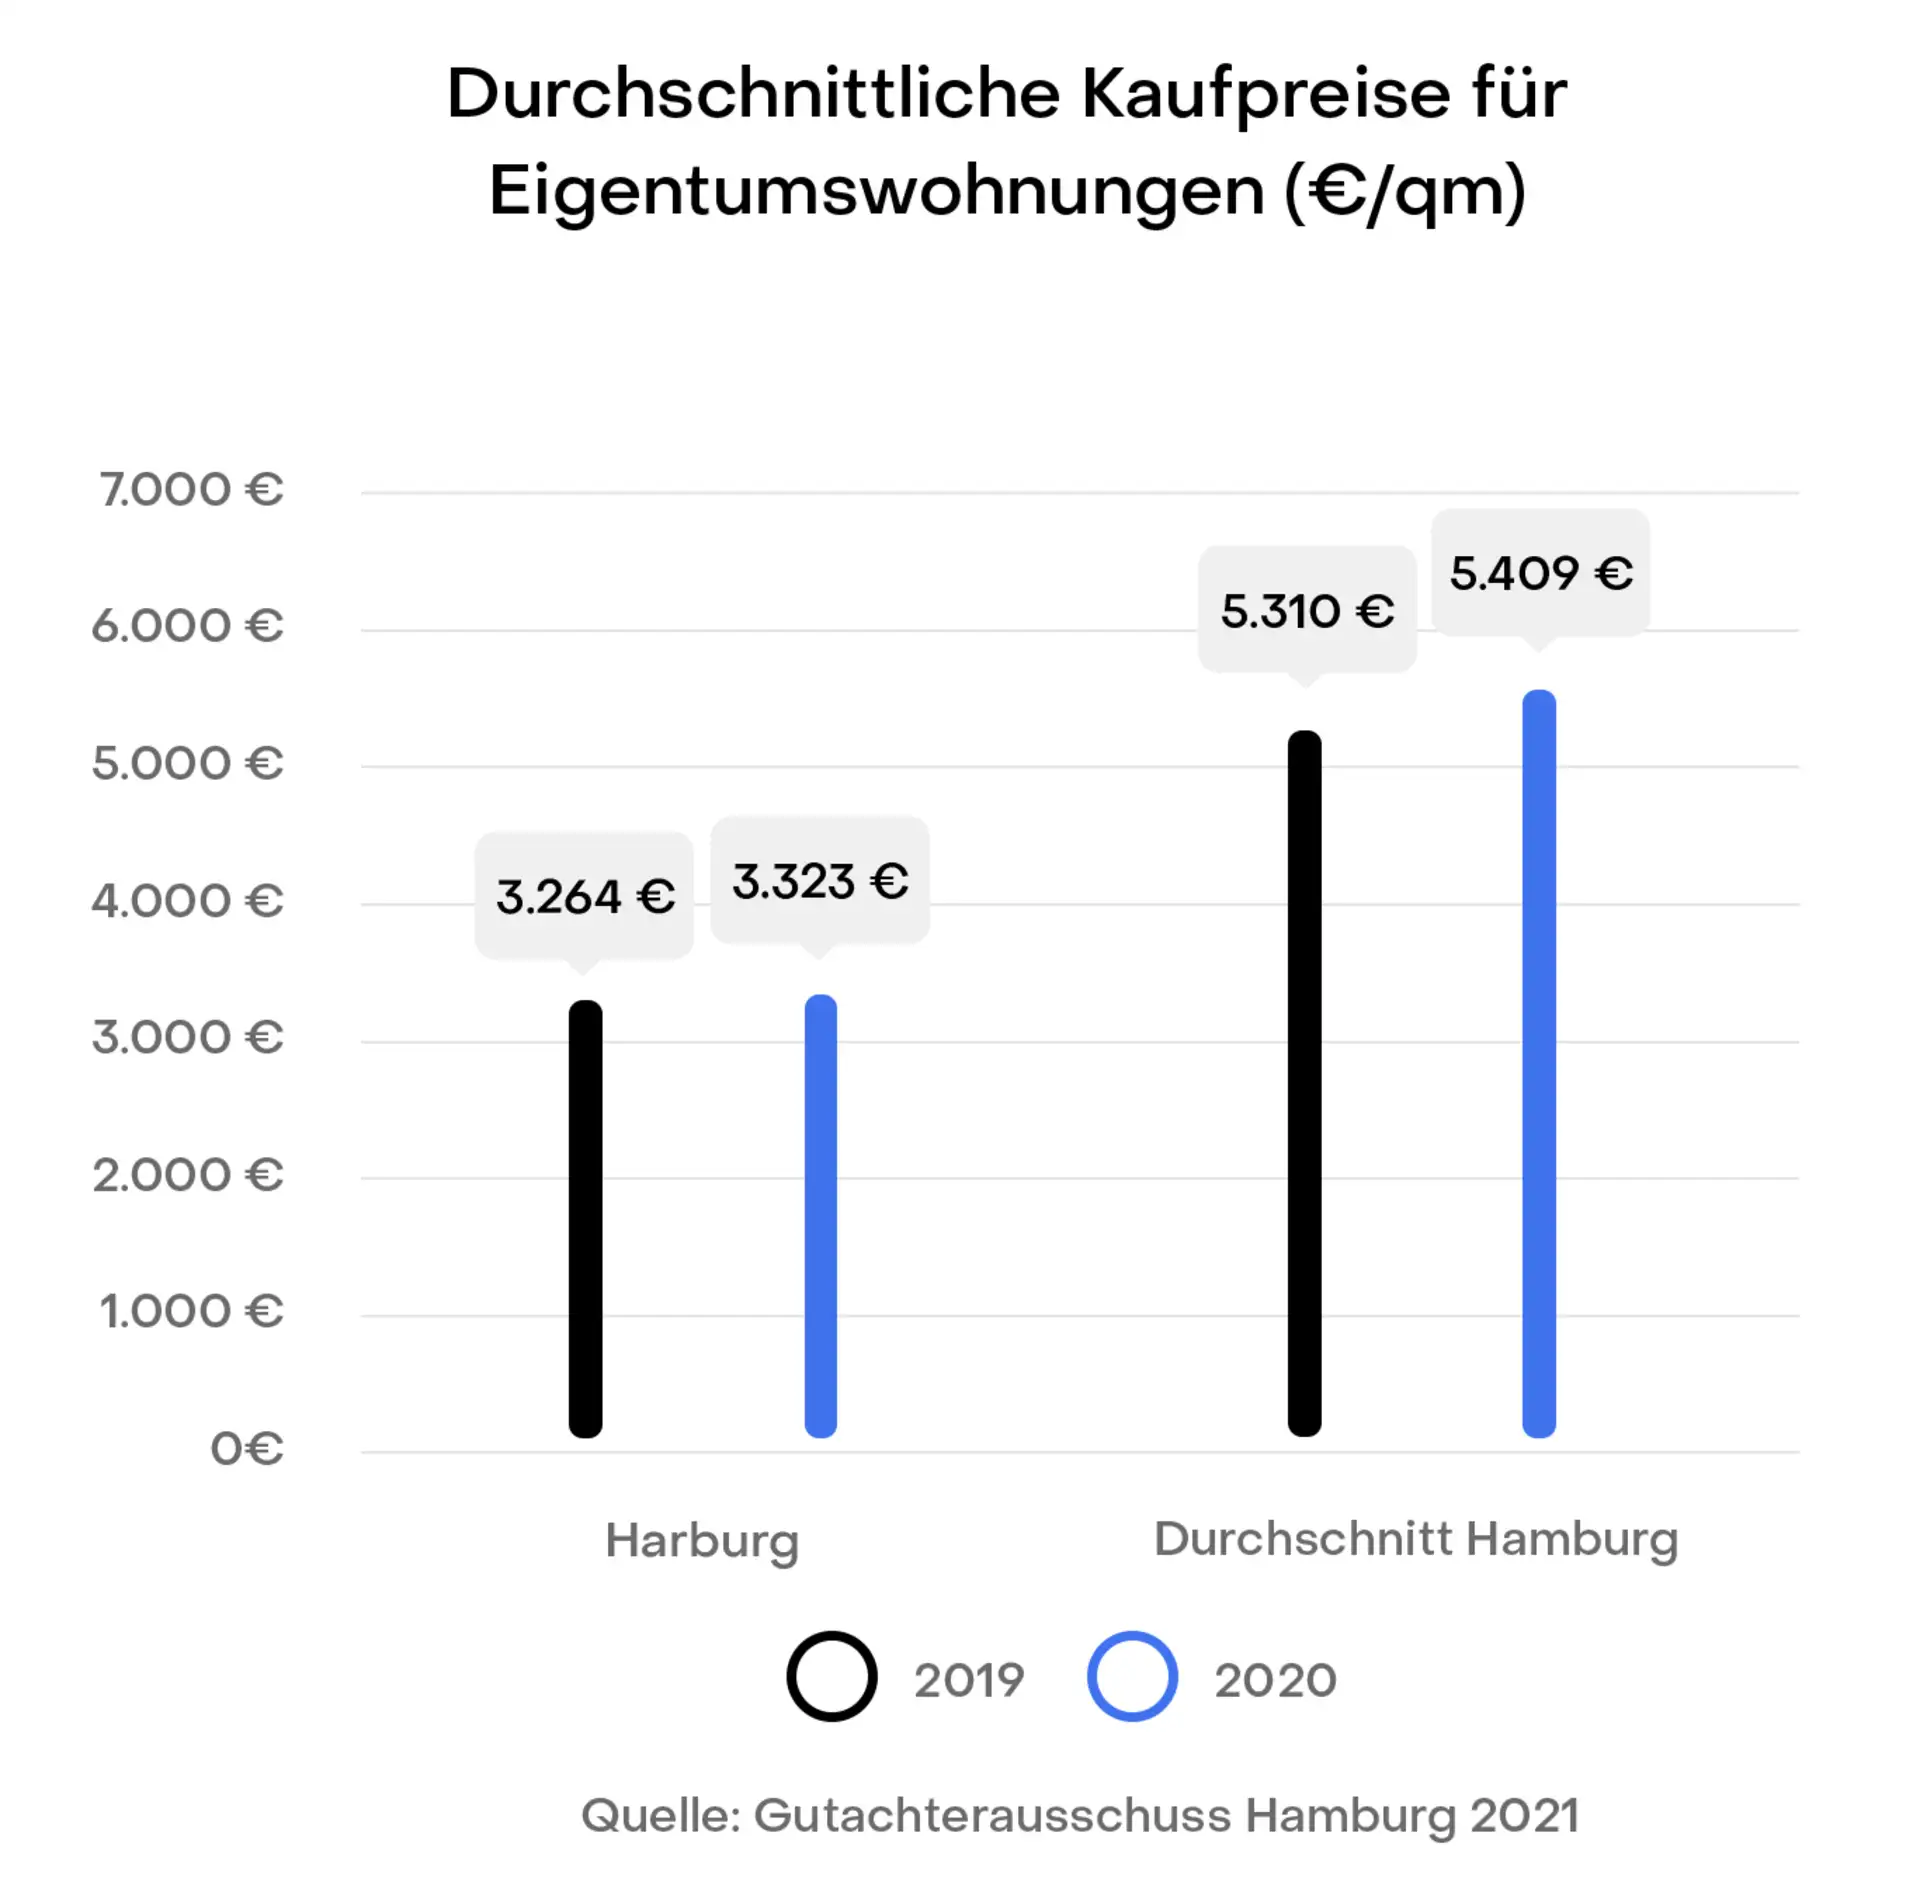 Hamburg Harburg Preisentwicklung Immobilien Kaufpreise
Gutachterausschuss